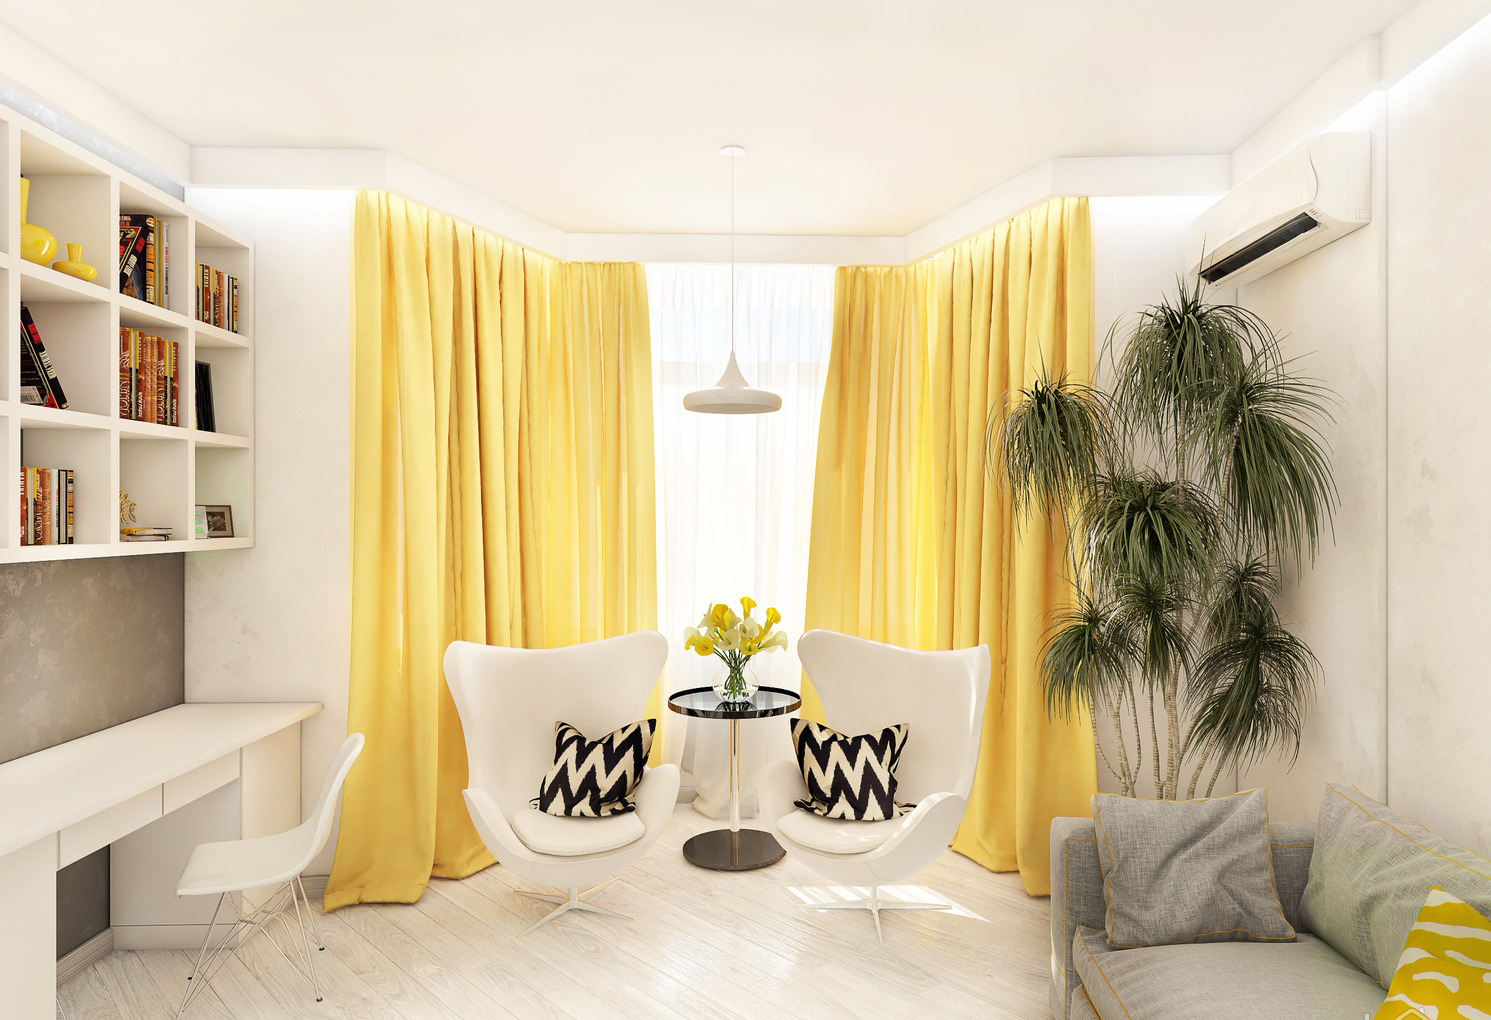 Un esempio di utilizzo del giallo chiaro all'interno di un appartamento